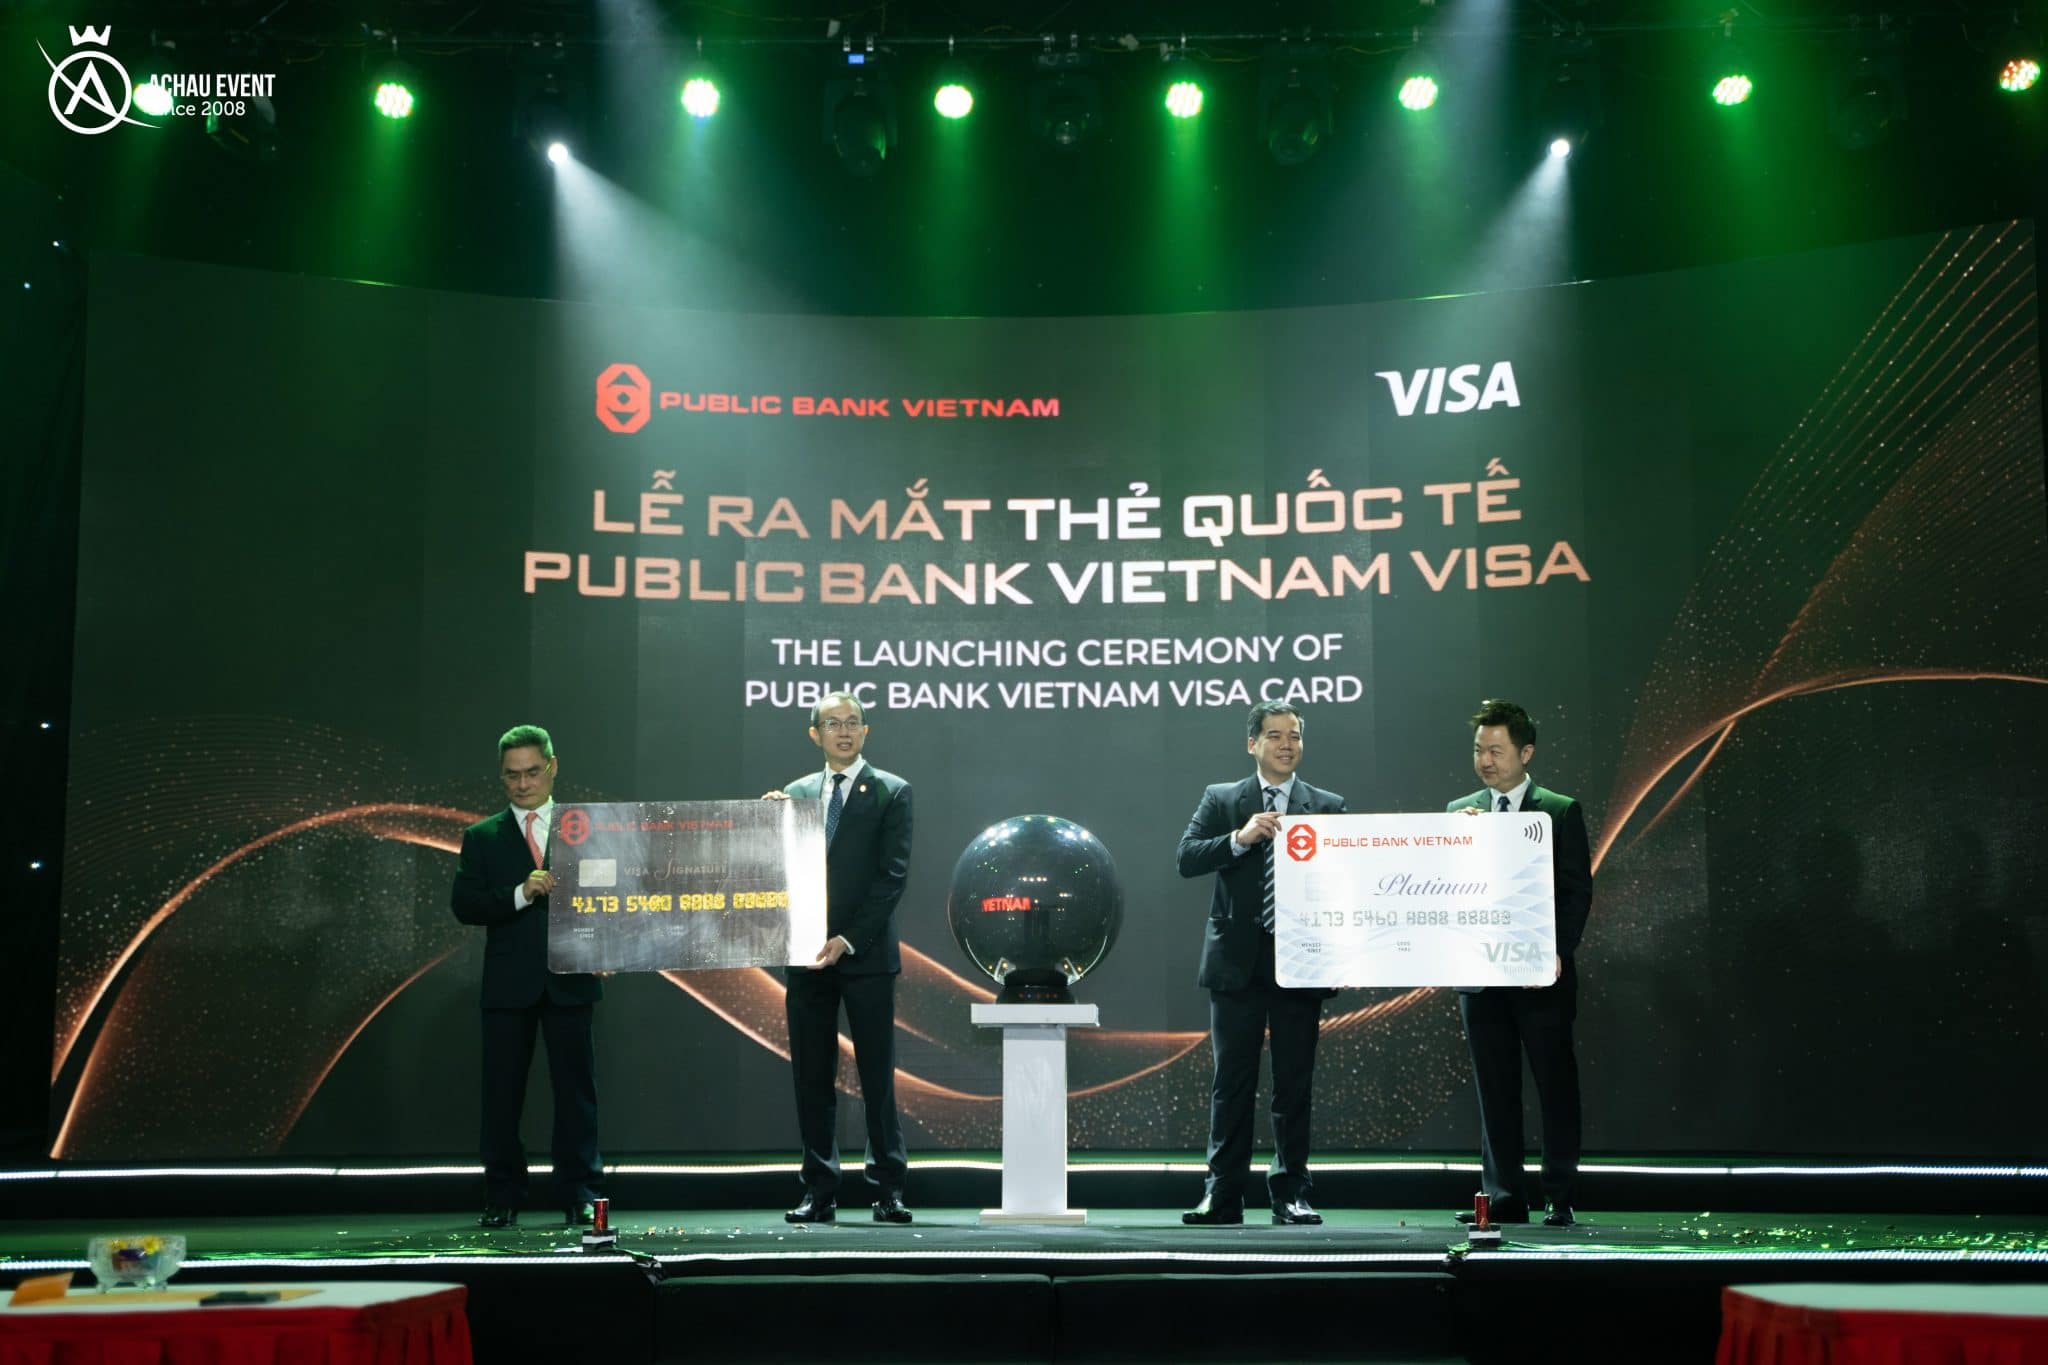 Đại diện Public Bank Vietnam và Visa với 2 mẫu thẻ Visa Signature và Visa Platinum